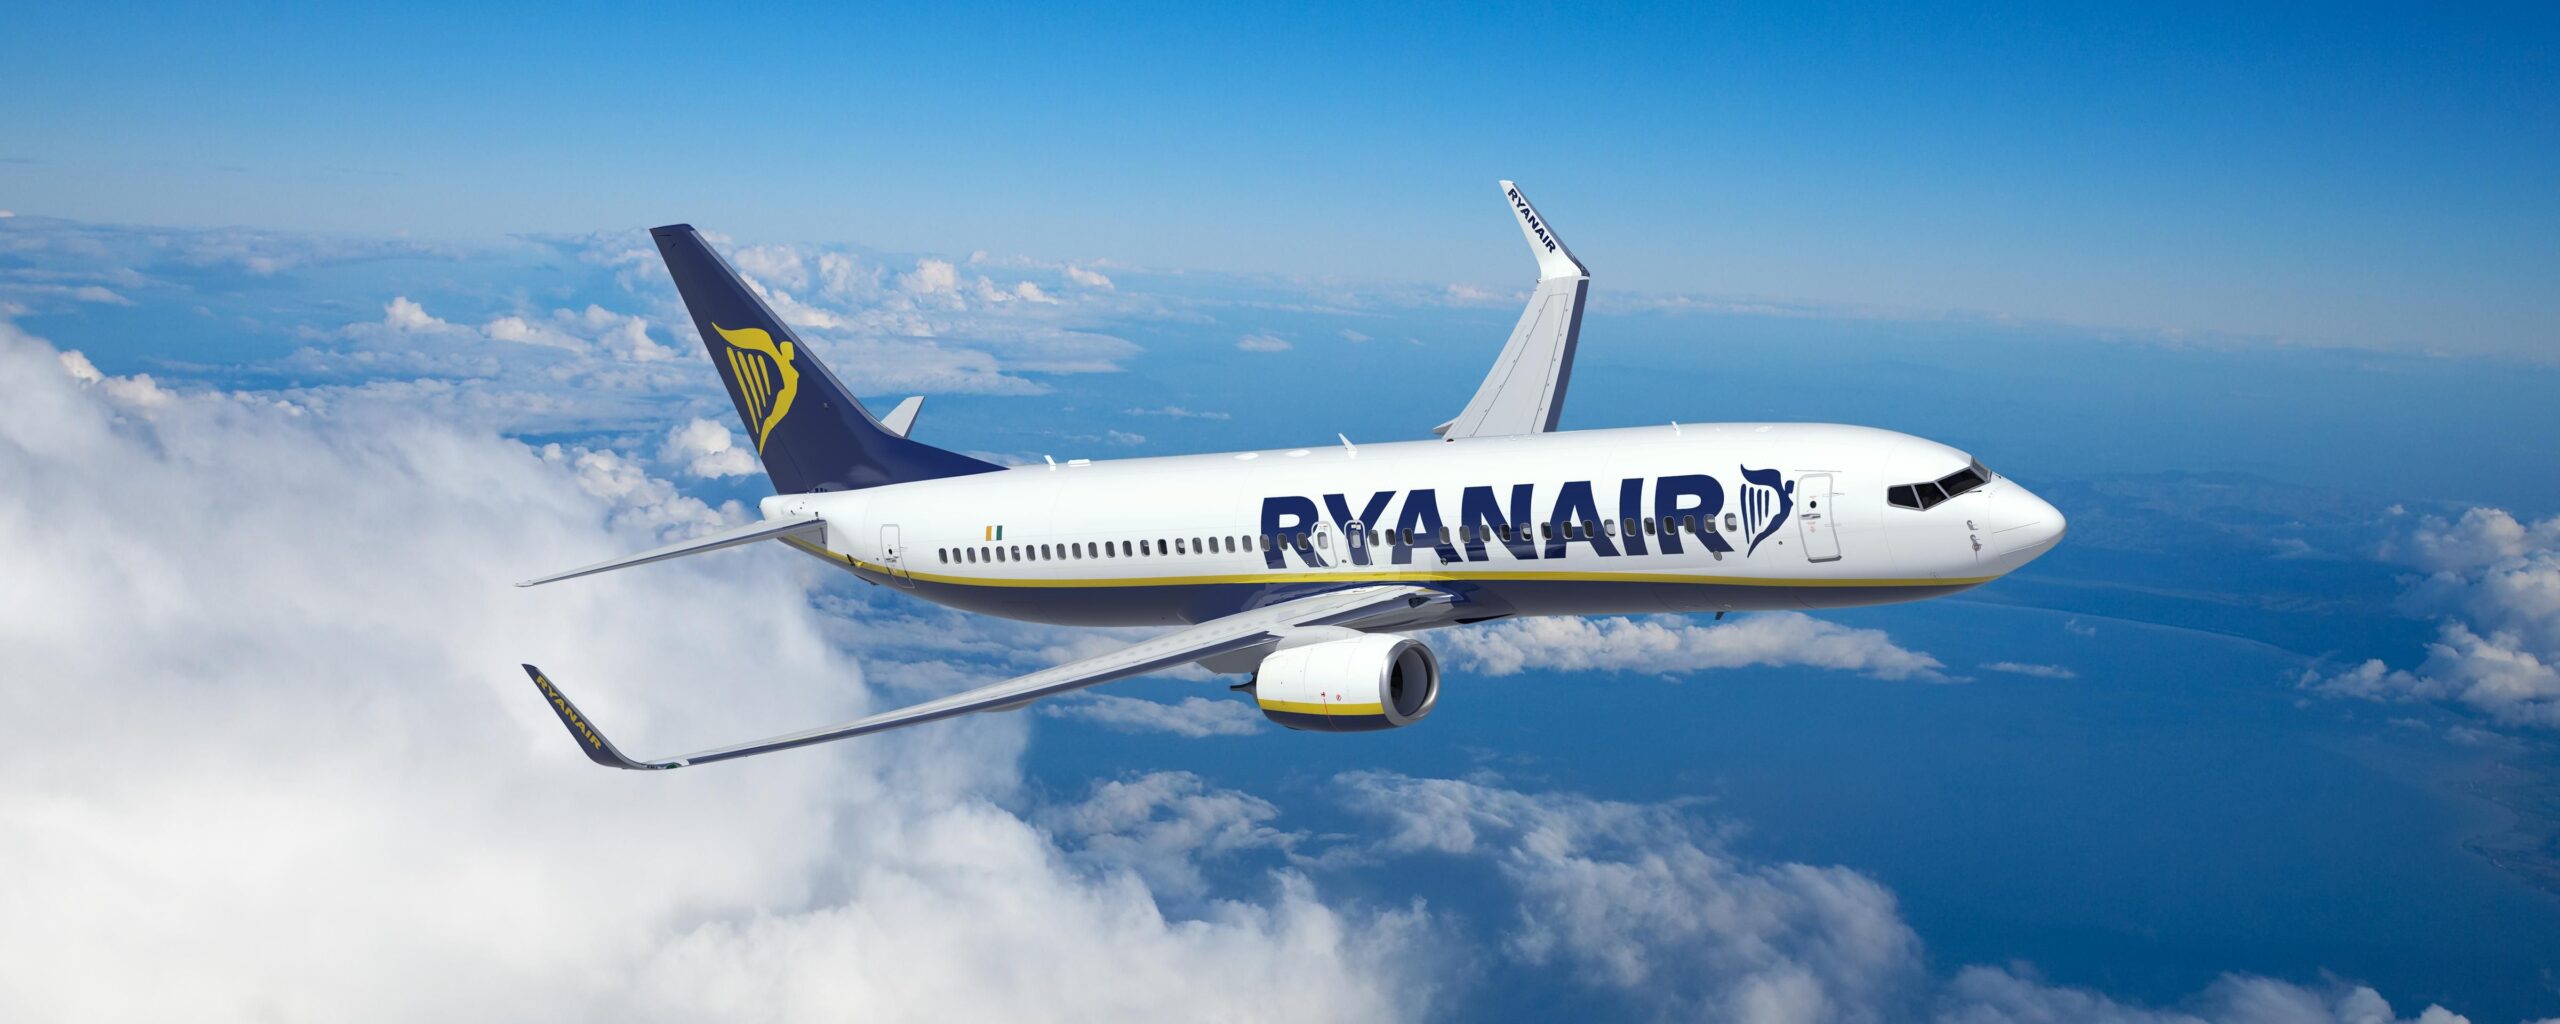 Ryanair festeggia 30 anni con tariffe speciali